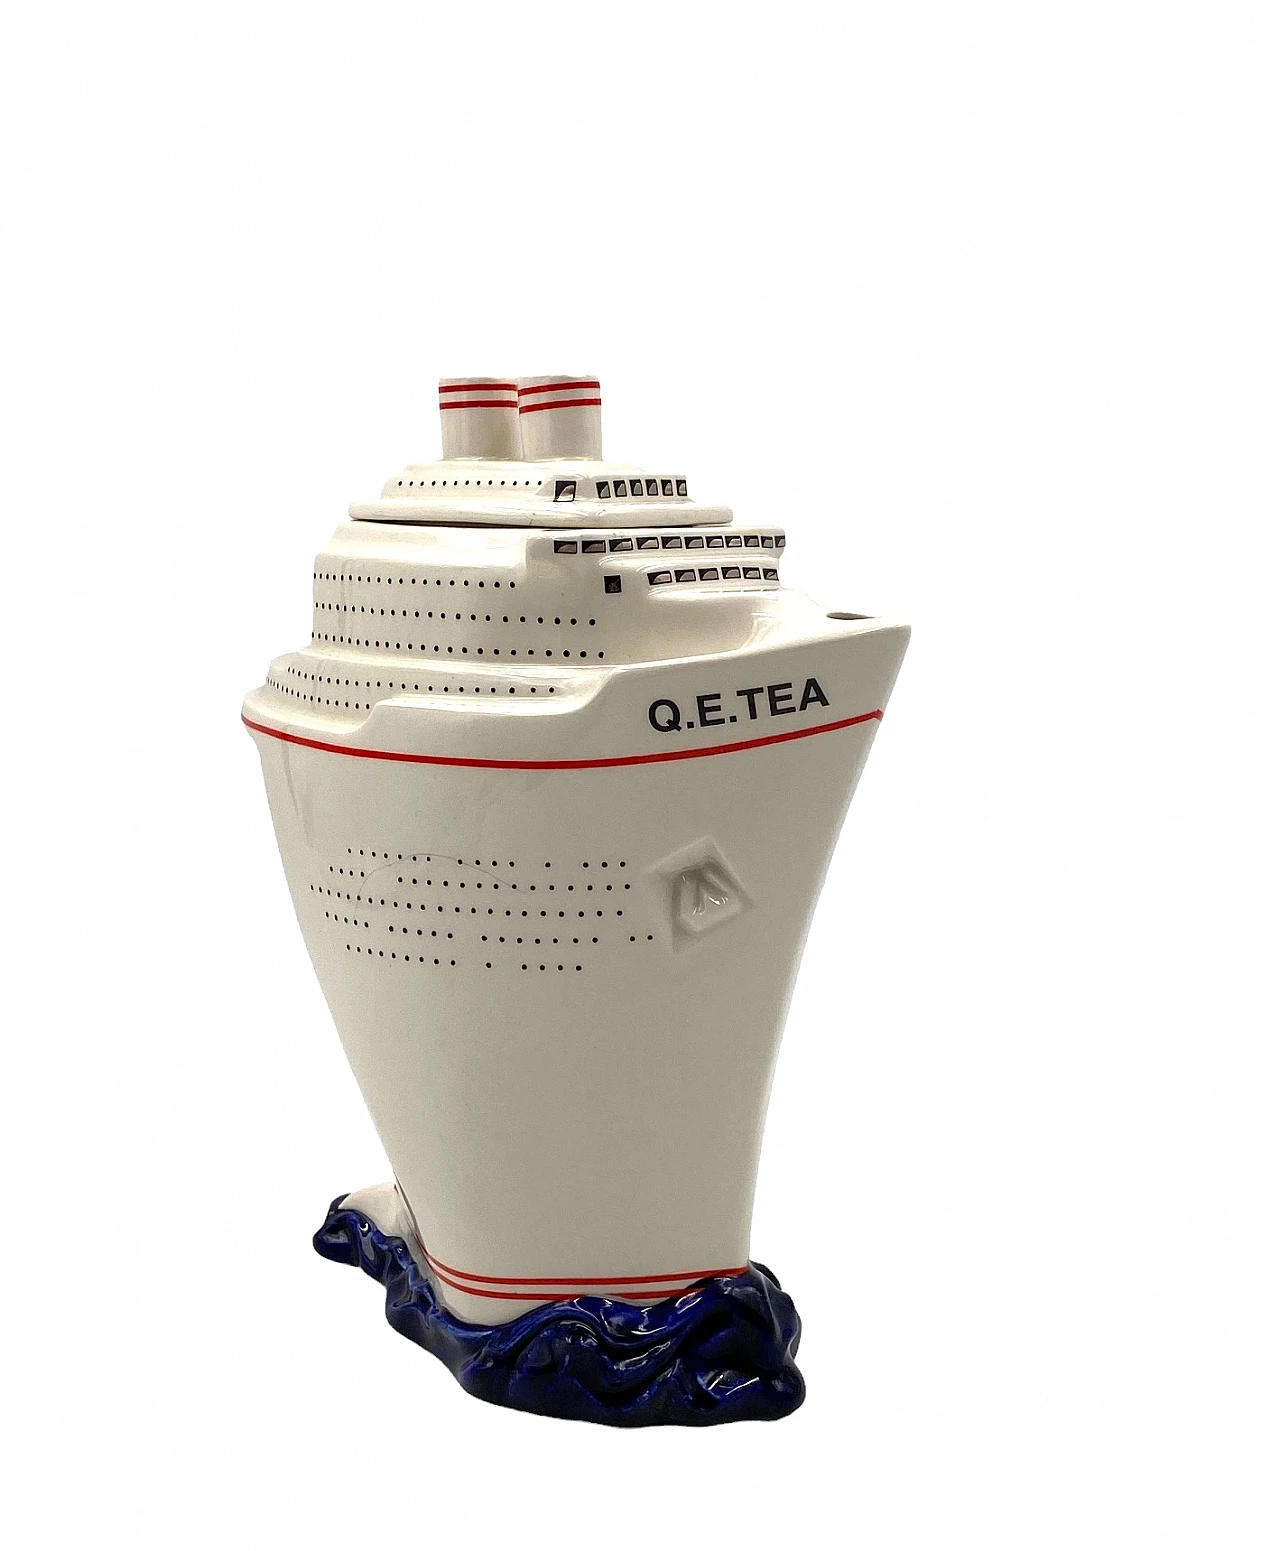 Queen Elizabeth II cruise ship teapot by Paul Cardew 15